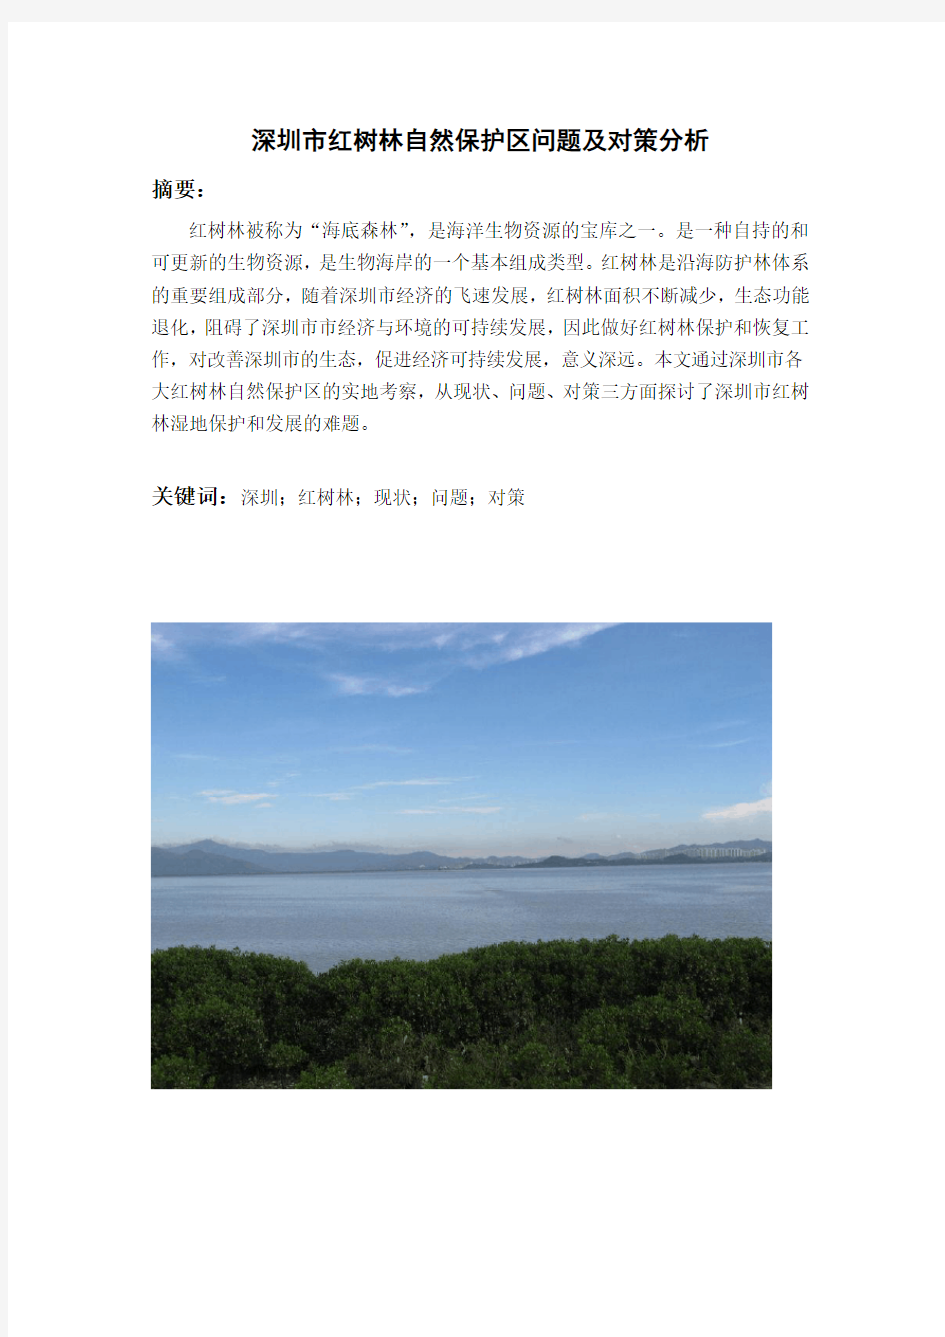 深圳市红树林自然保护区问题及对策分析大学论文